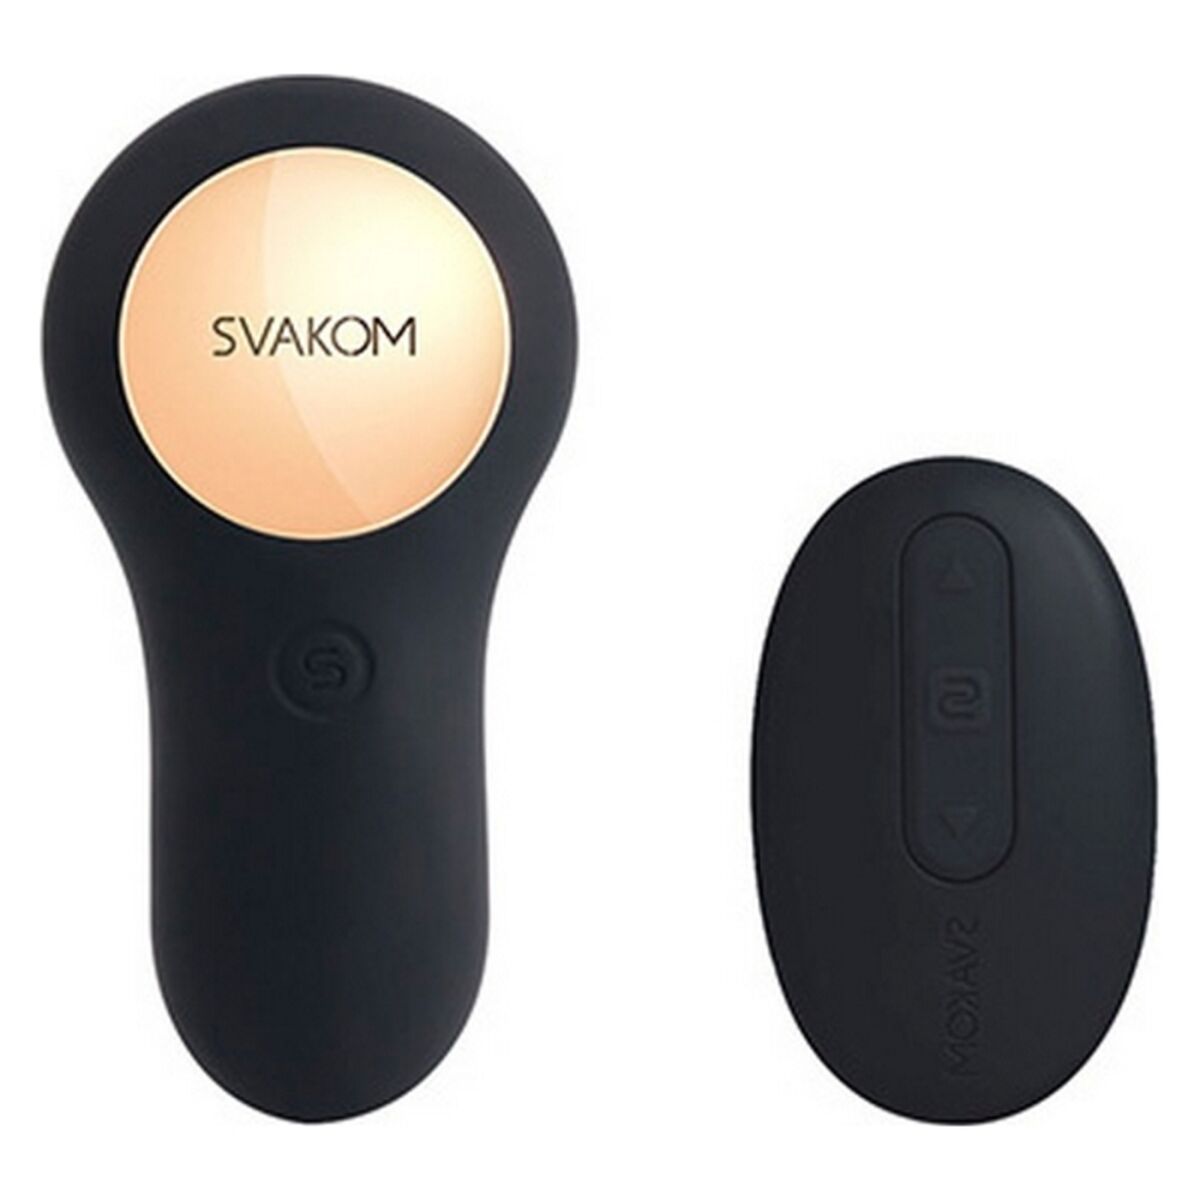 Kaufe Vick Powerful Plug Silikon Noir Prostatastimulator Svakom bei AWK Flagship um € 55.00